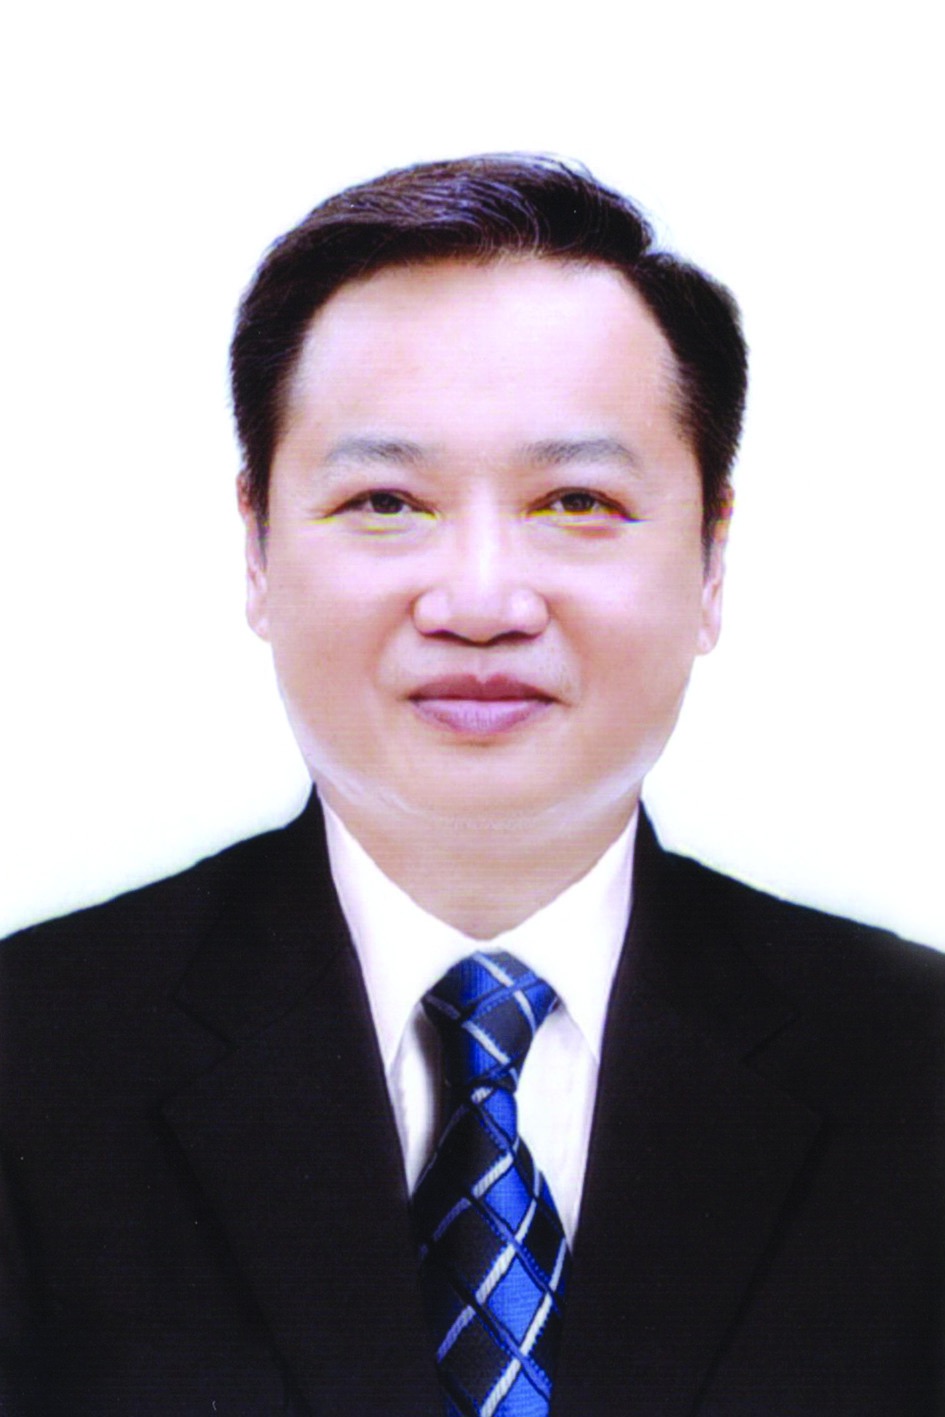 Chương trình hành động của Bí thư Huyện ủy Phú Xuyên Lê Ngọc Anh, ứng cử viên đại biểu HĐND TP Hà Nội nhiệm kỳ 2021 - 2026 - Ảnh 1